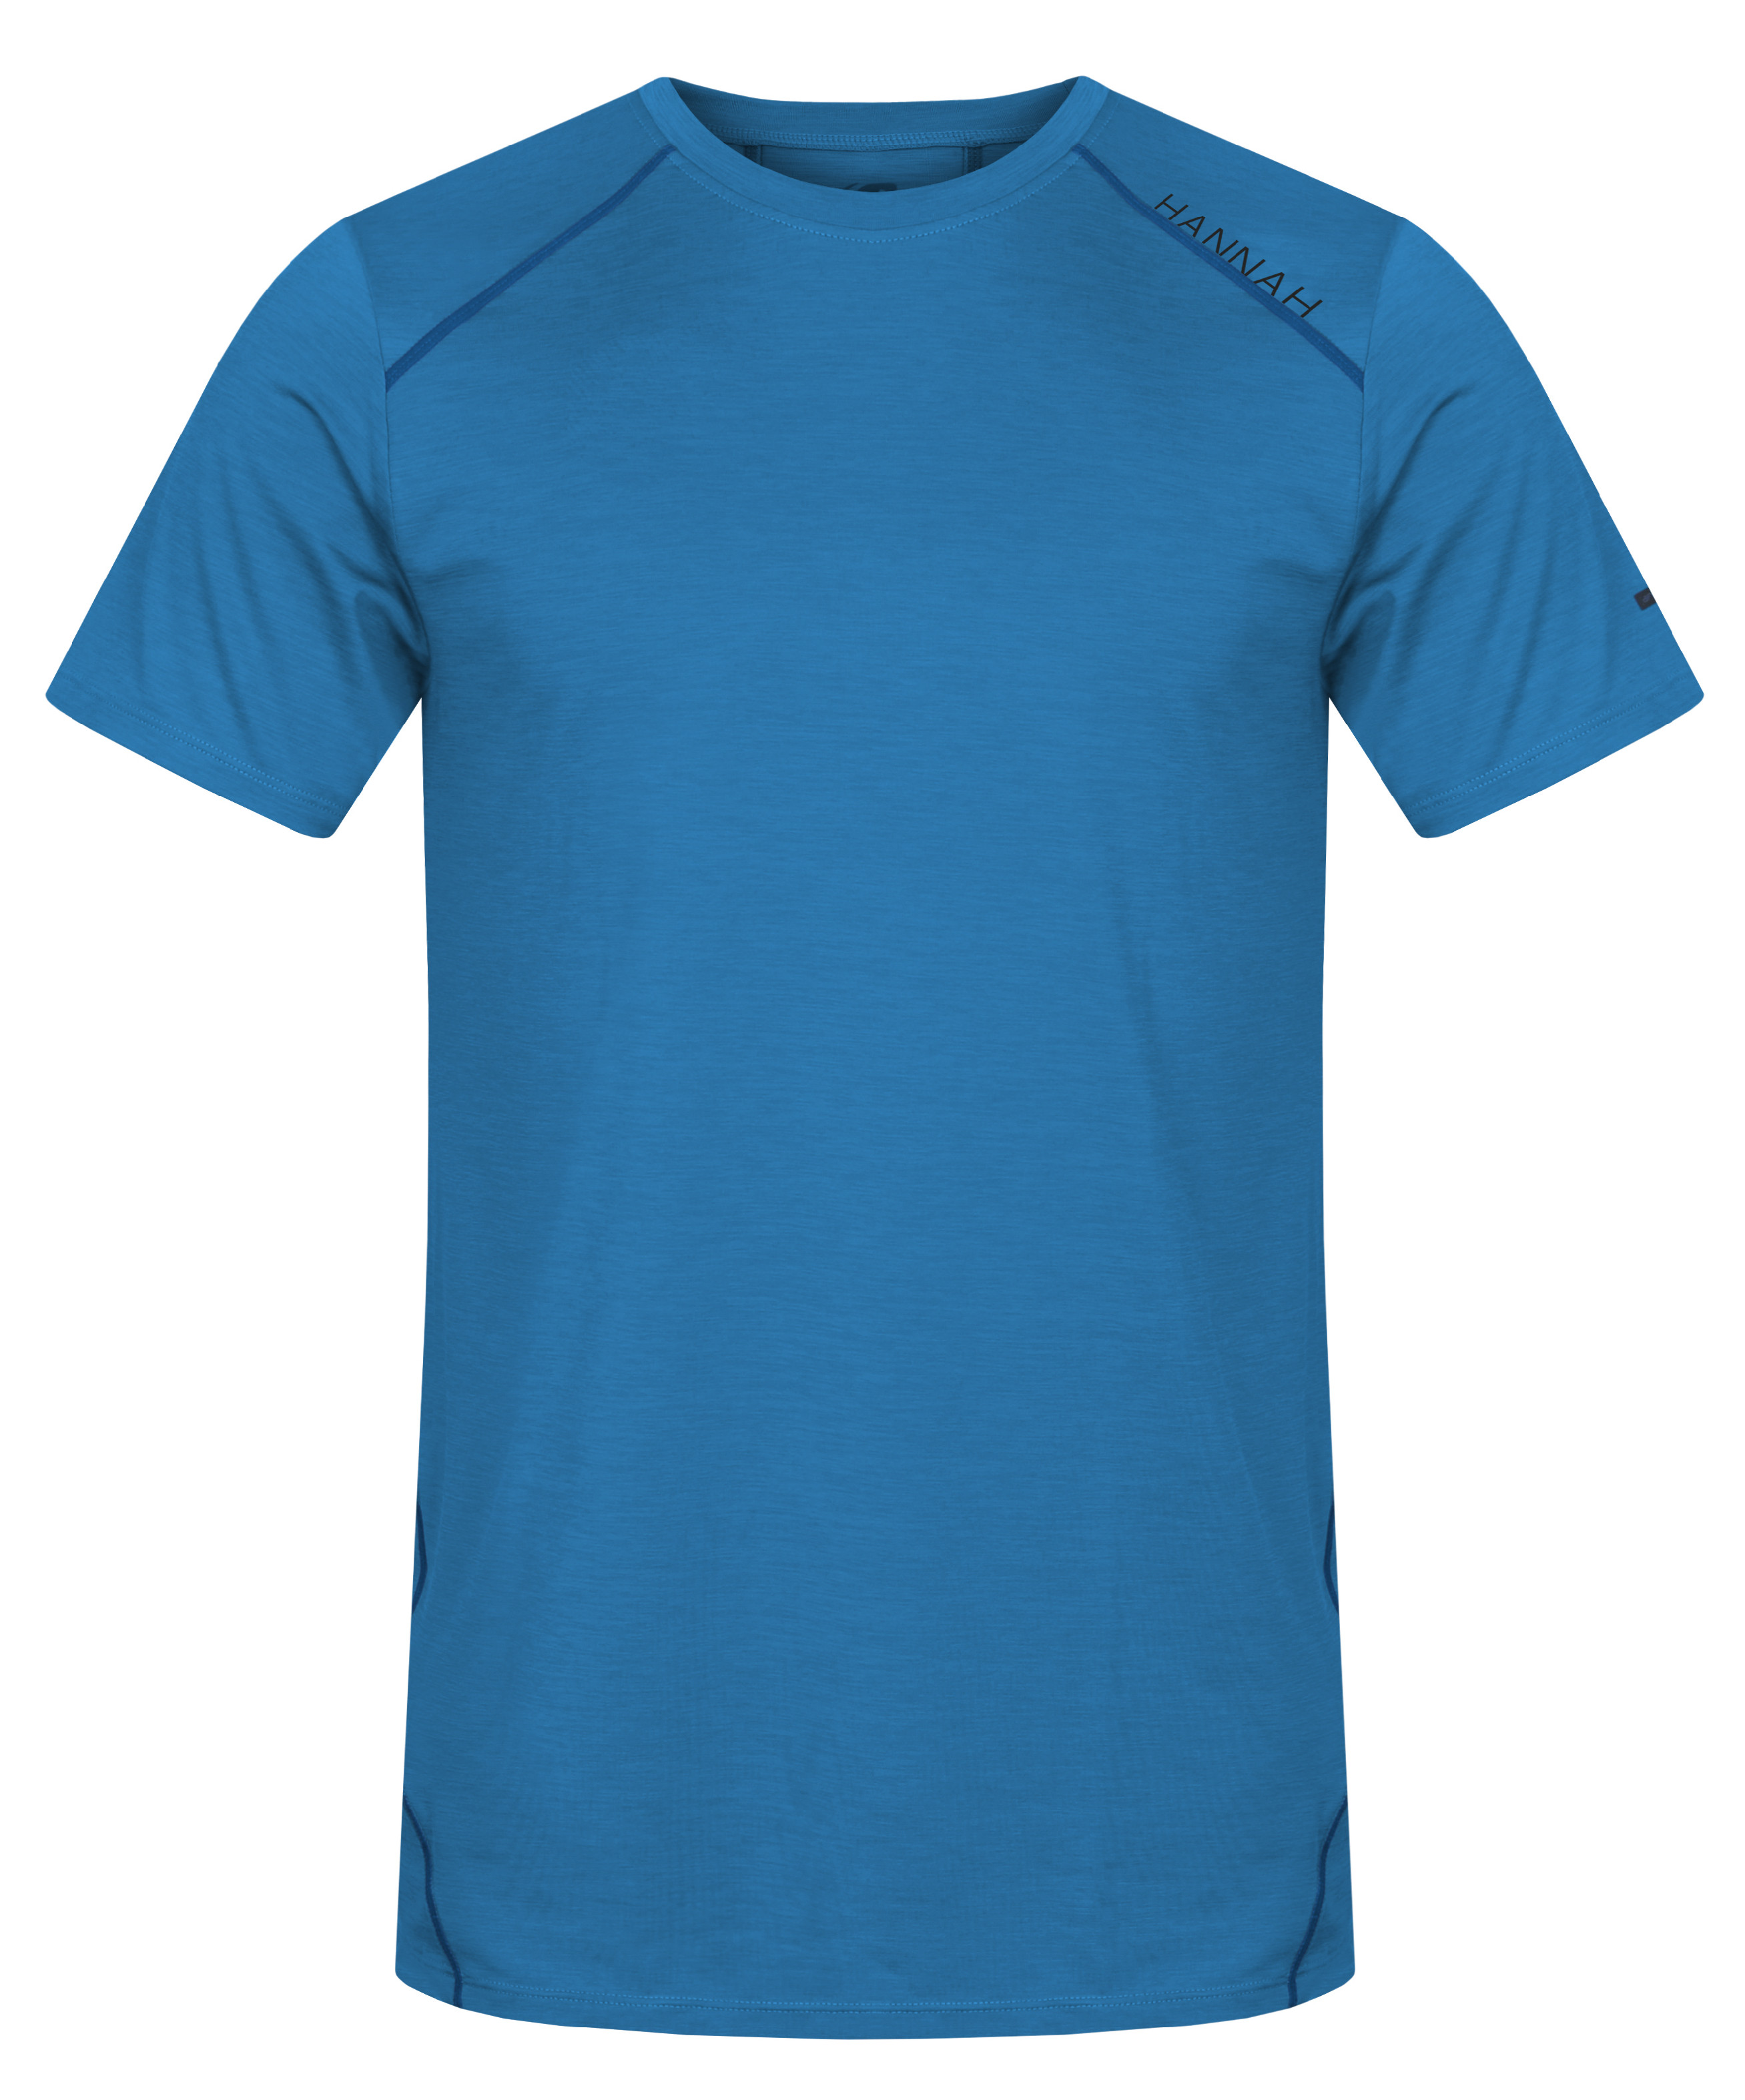 Hannah PELLO II french blue mel Velikost: M pánské tričko s krátkým rukávem